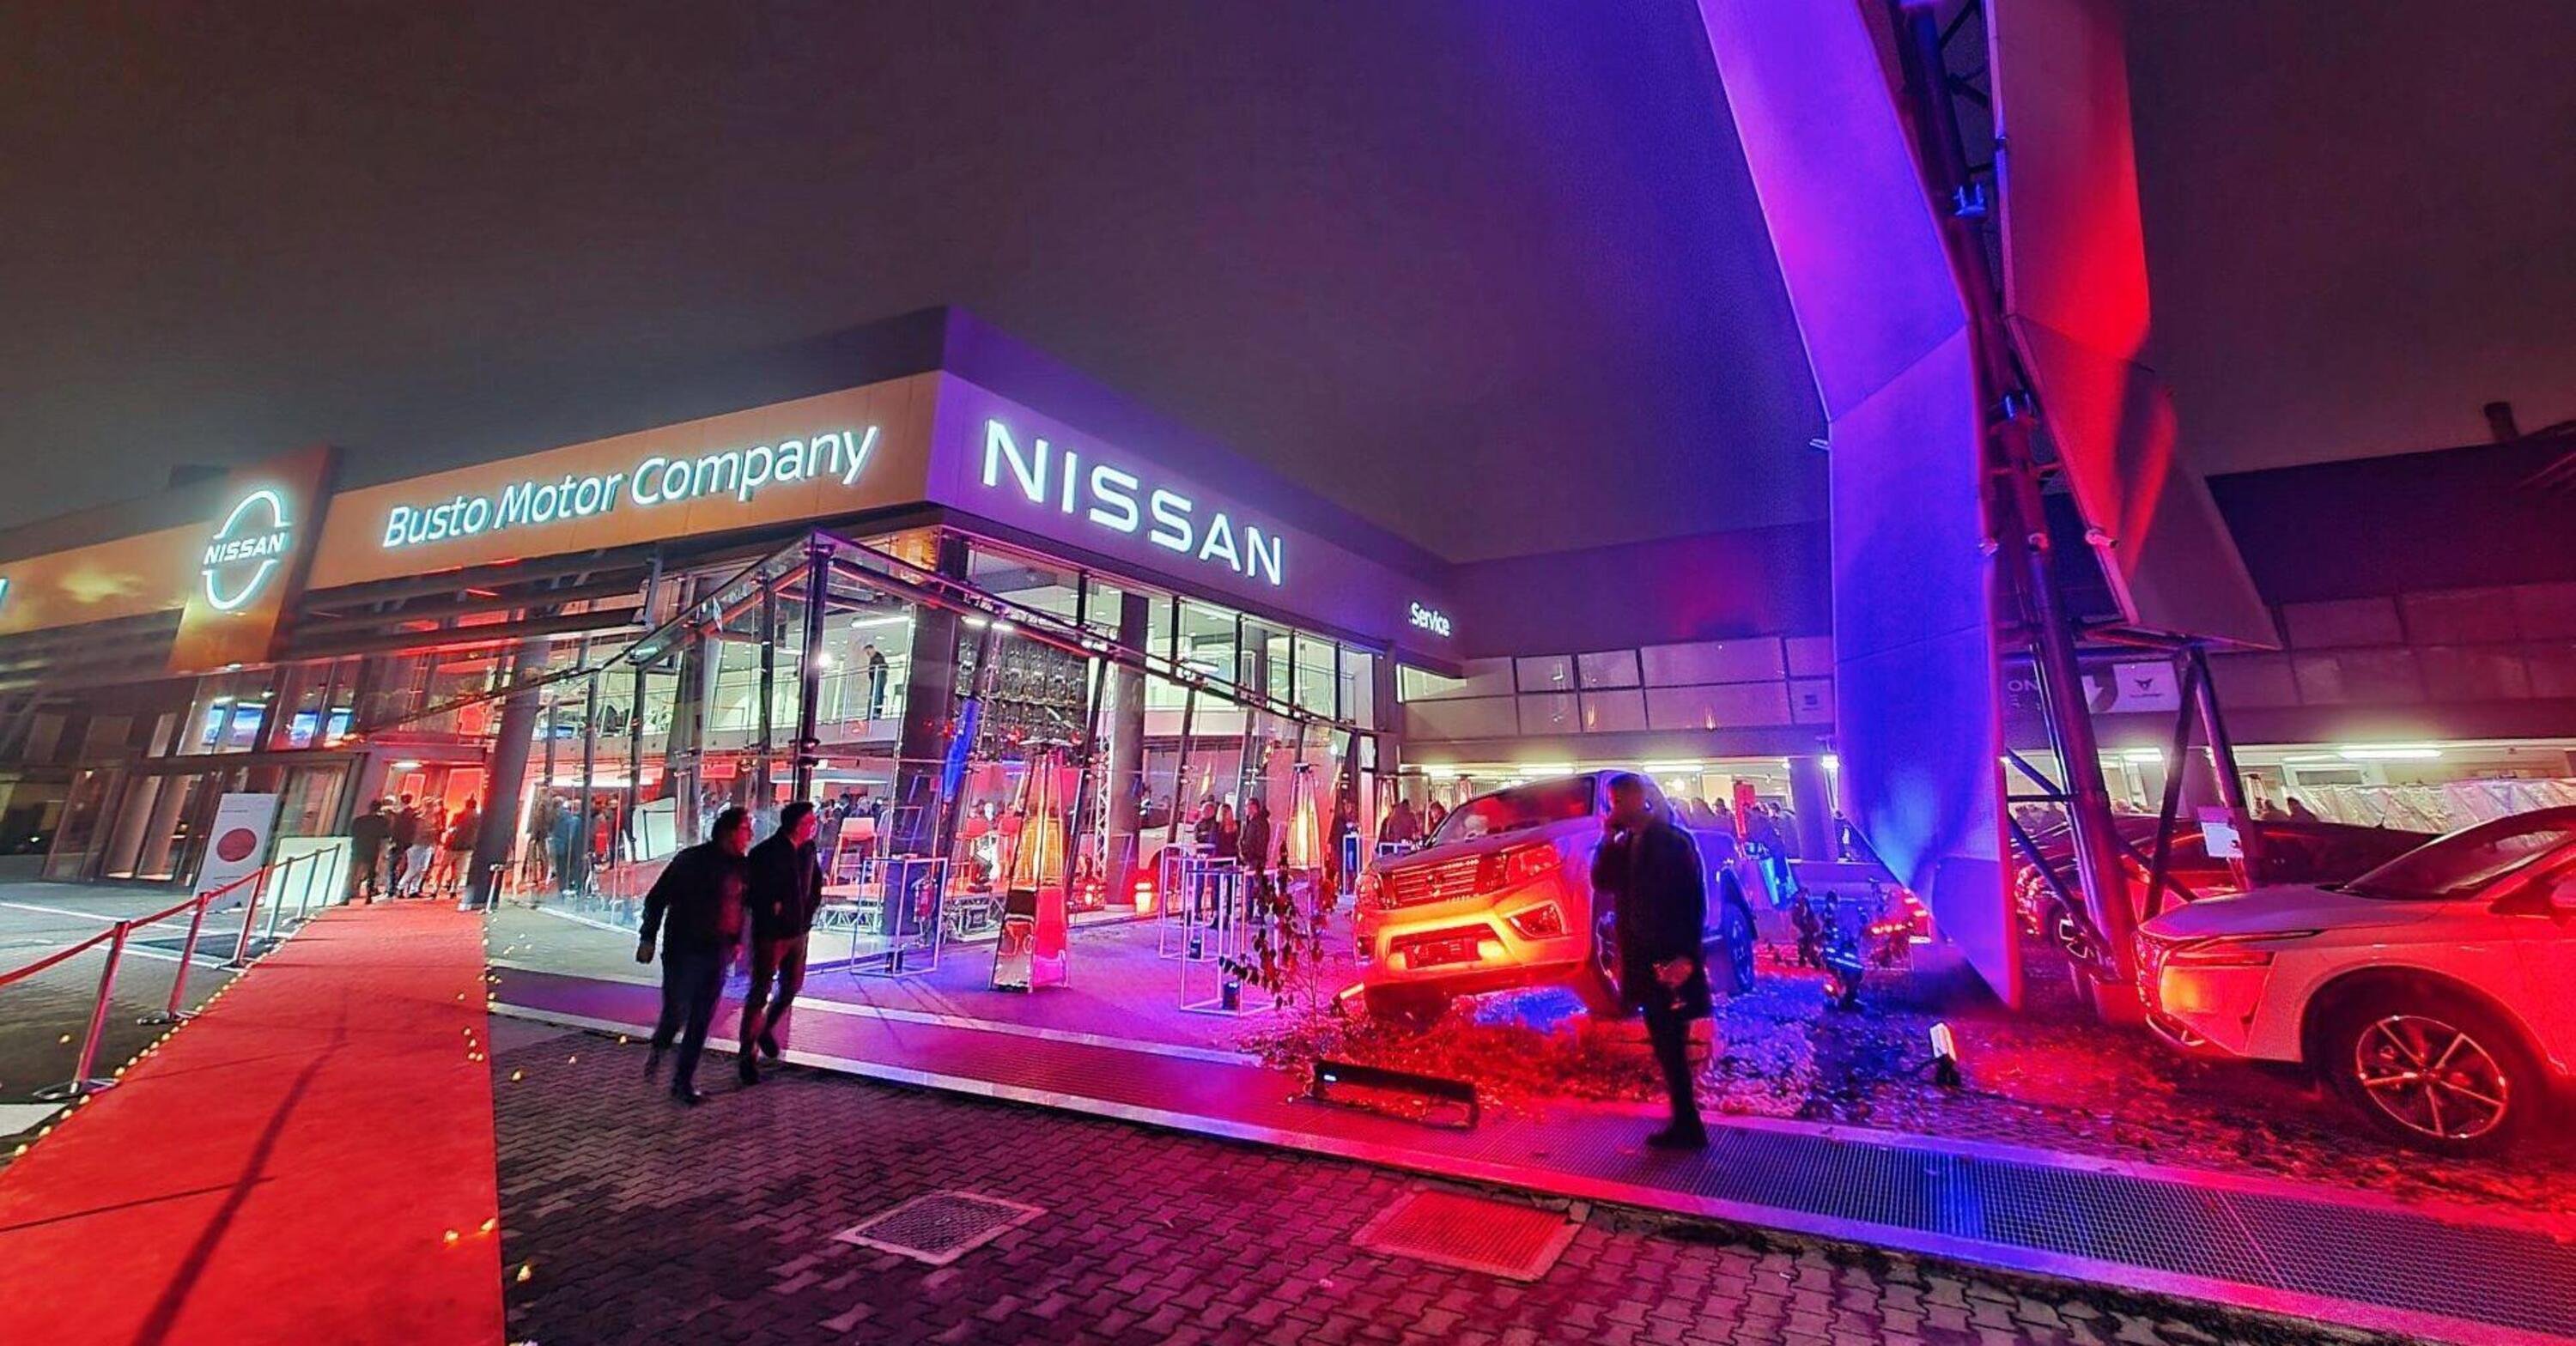 Inaugurazione nuova sede NISSAN - Busto Motor Company a Busto Arsizio